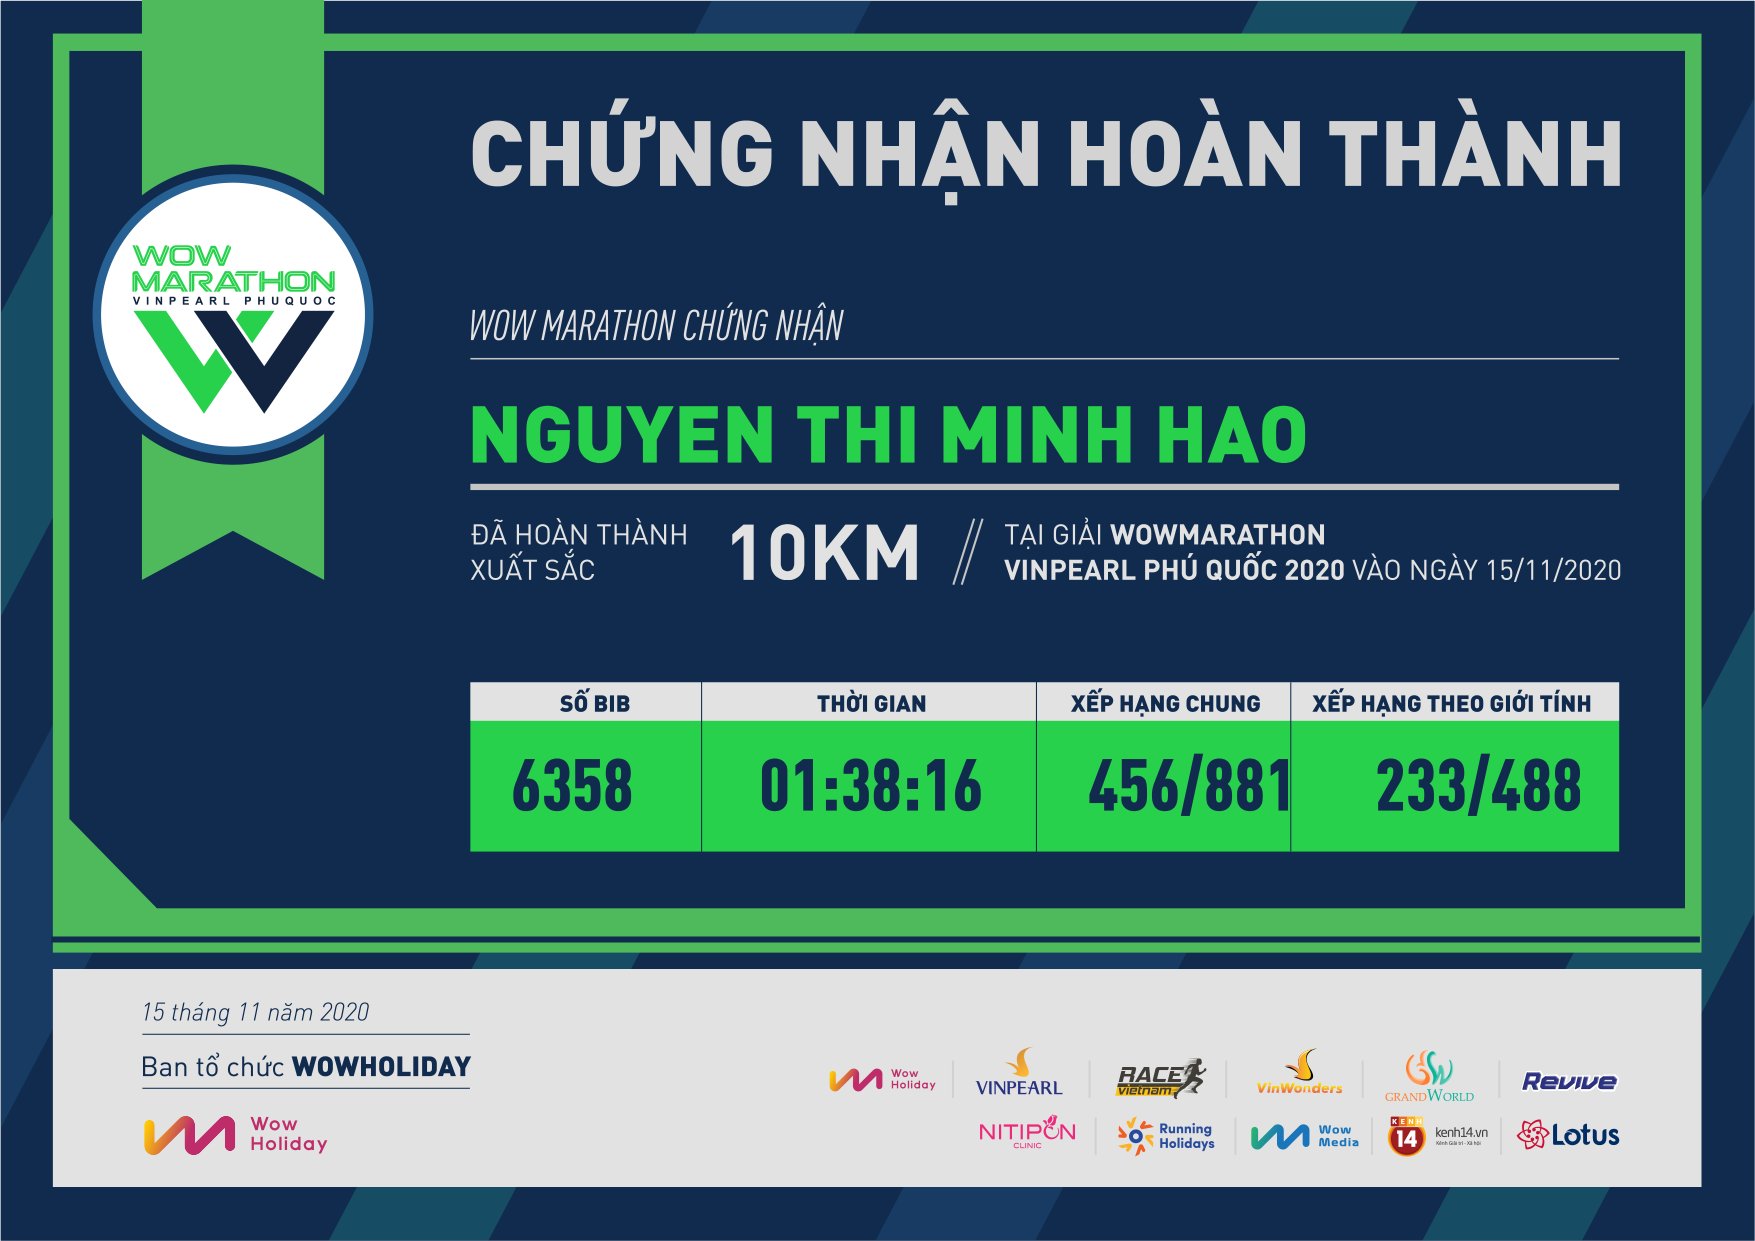 6358 - Nguyen Thi Minh Hao